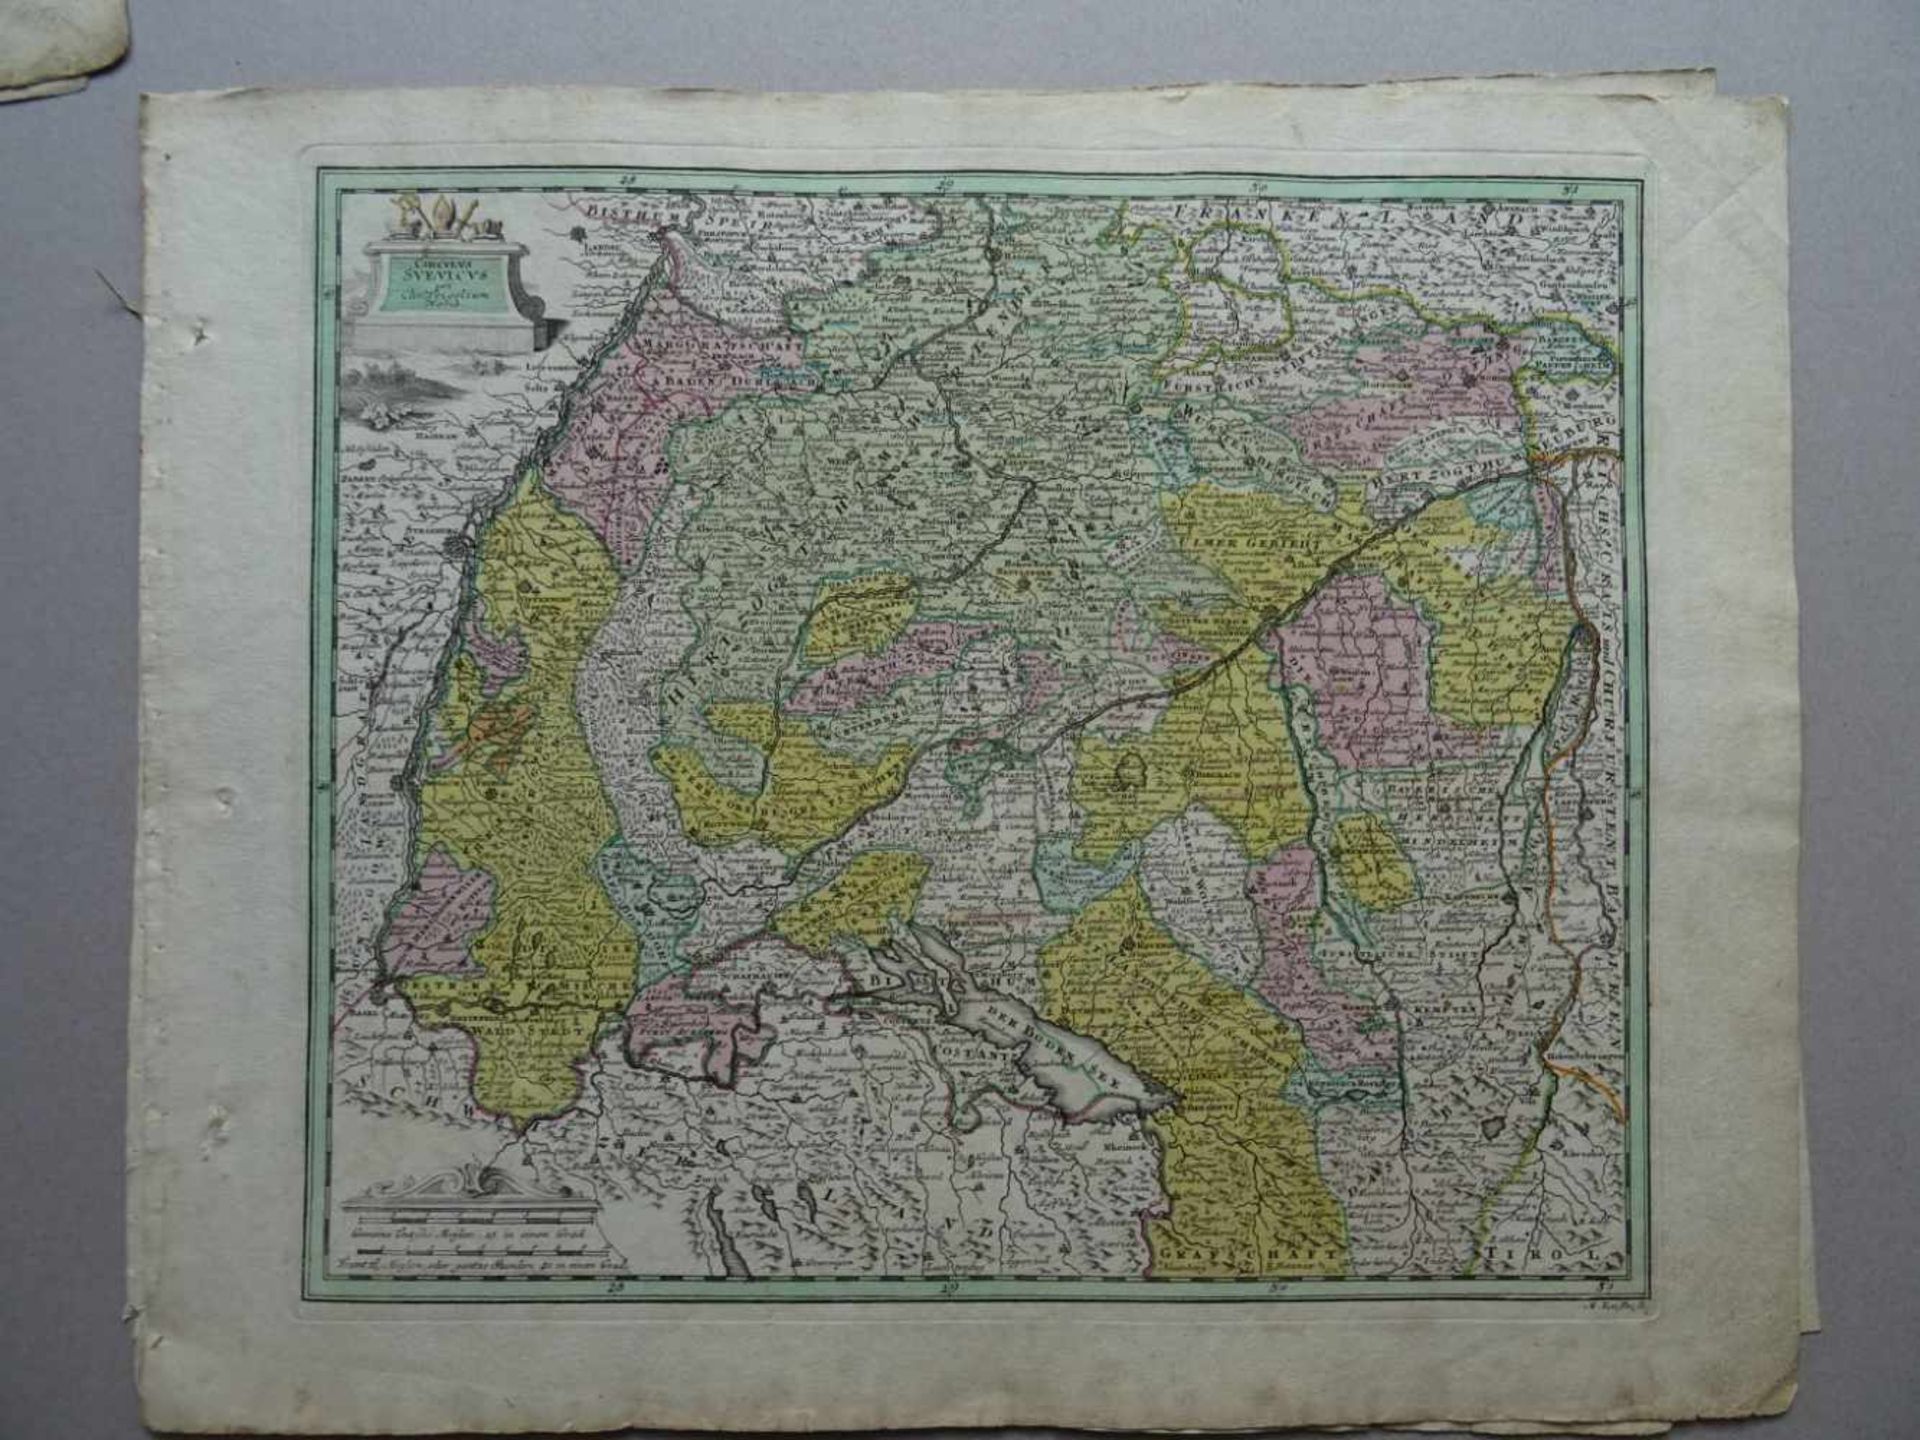 Weigel.Konvolut von 5 altkolor. Kupferstichkarten von Weigel. Nürnberg, um 1730. Je ca. 34 x 39 cm. - Bild 3 aus 4